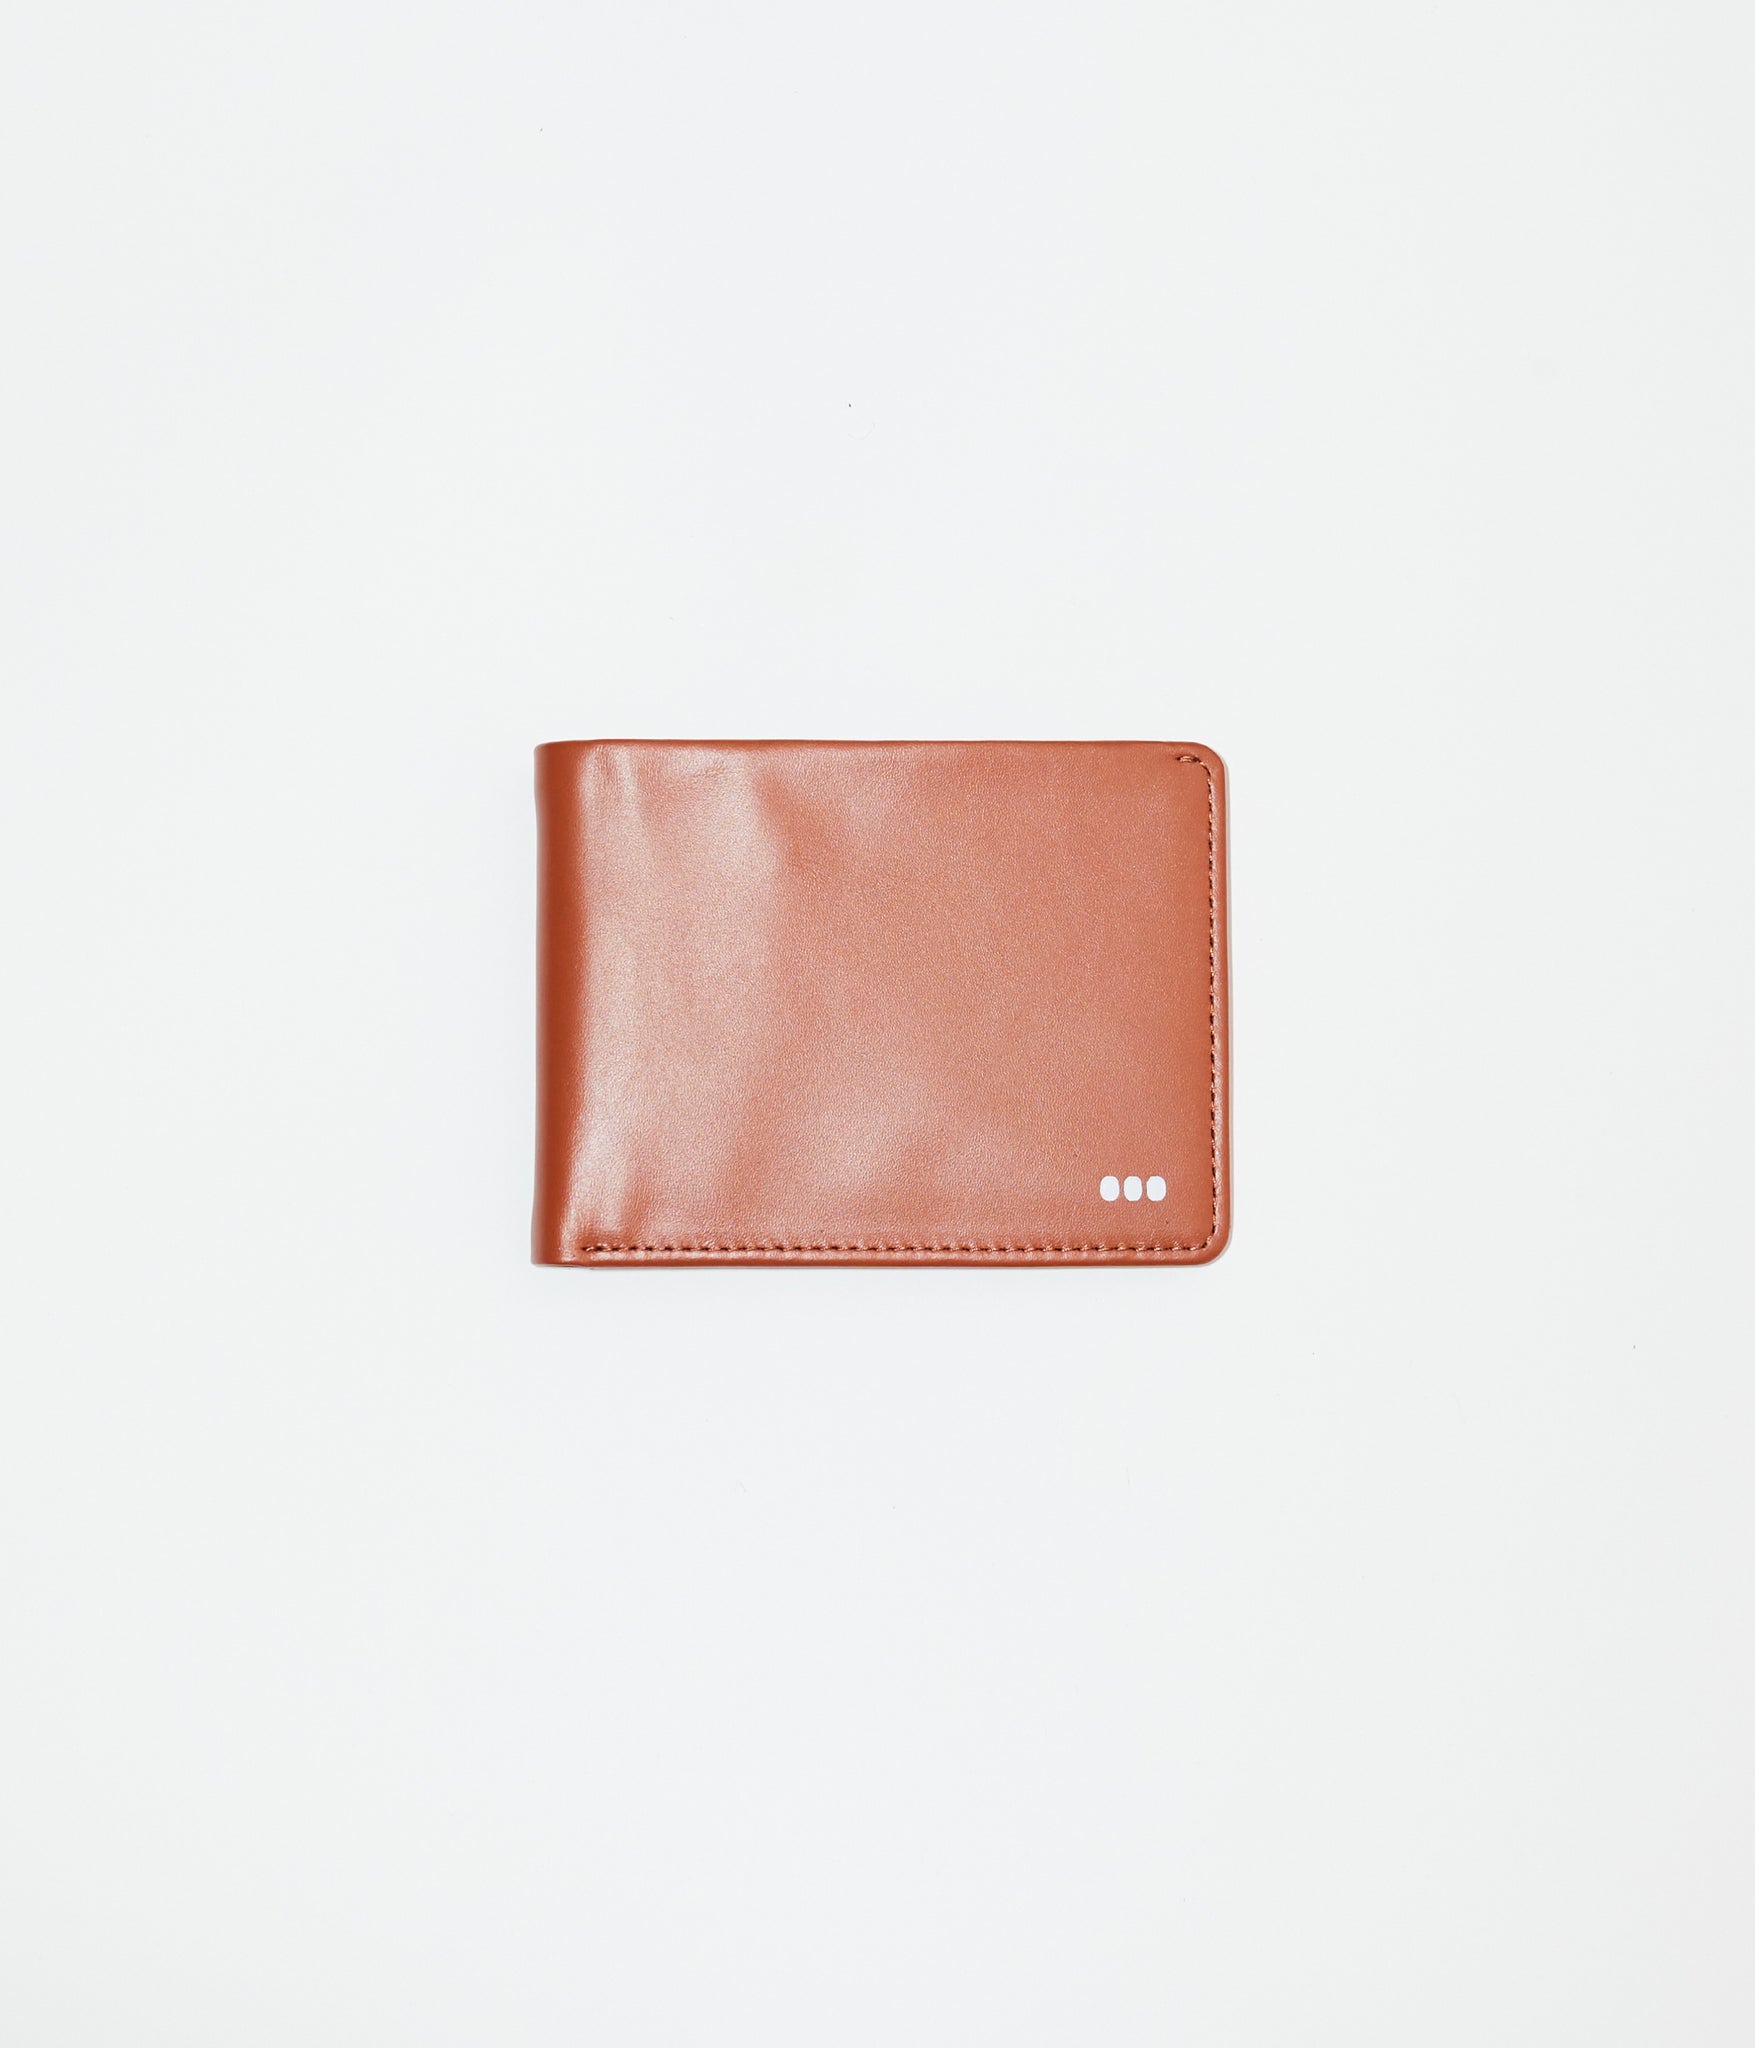 Kit Wallet in Tan